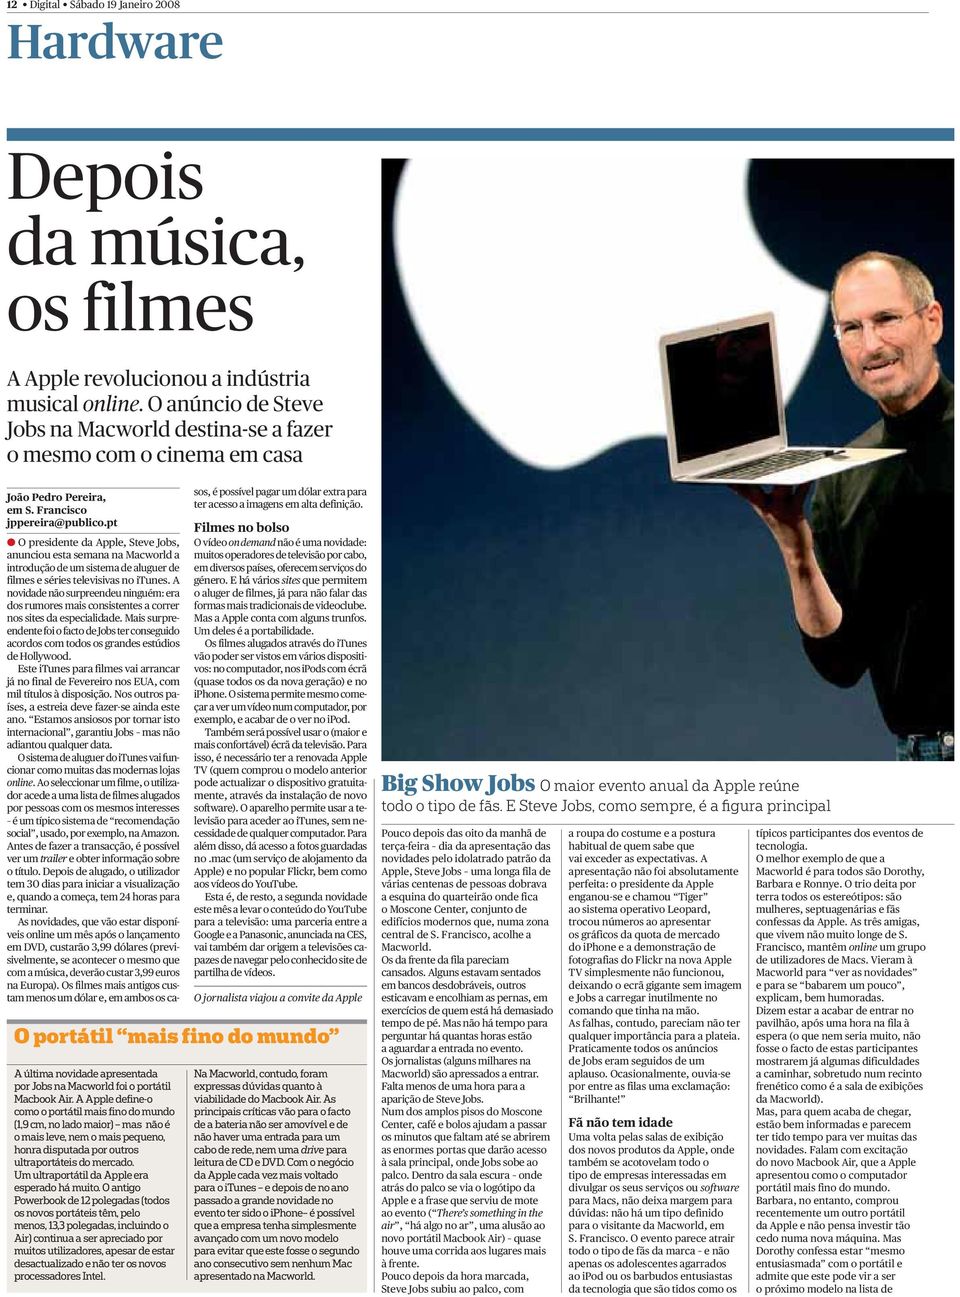 pt A O presidente da Apple, Steve Jobs, anunciou esta semana na Macworld a introdução de um sistema de aluguer de filmes e séries televisivas no itunes.